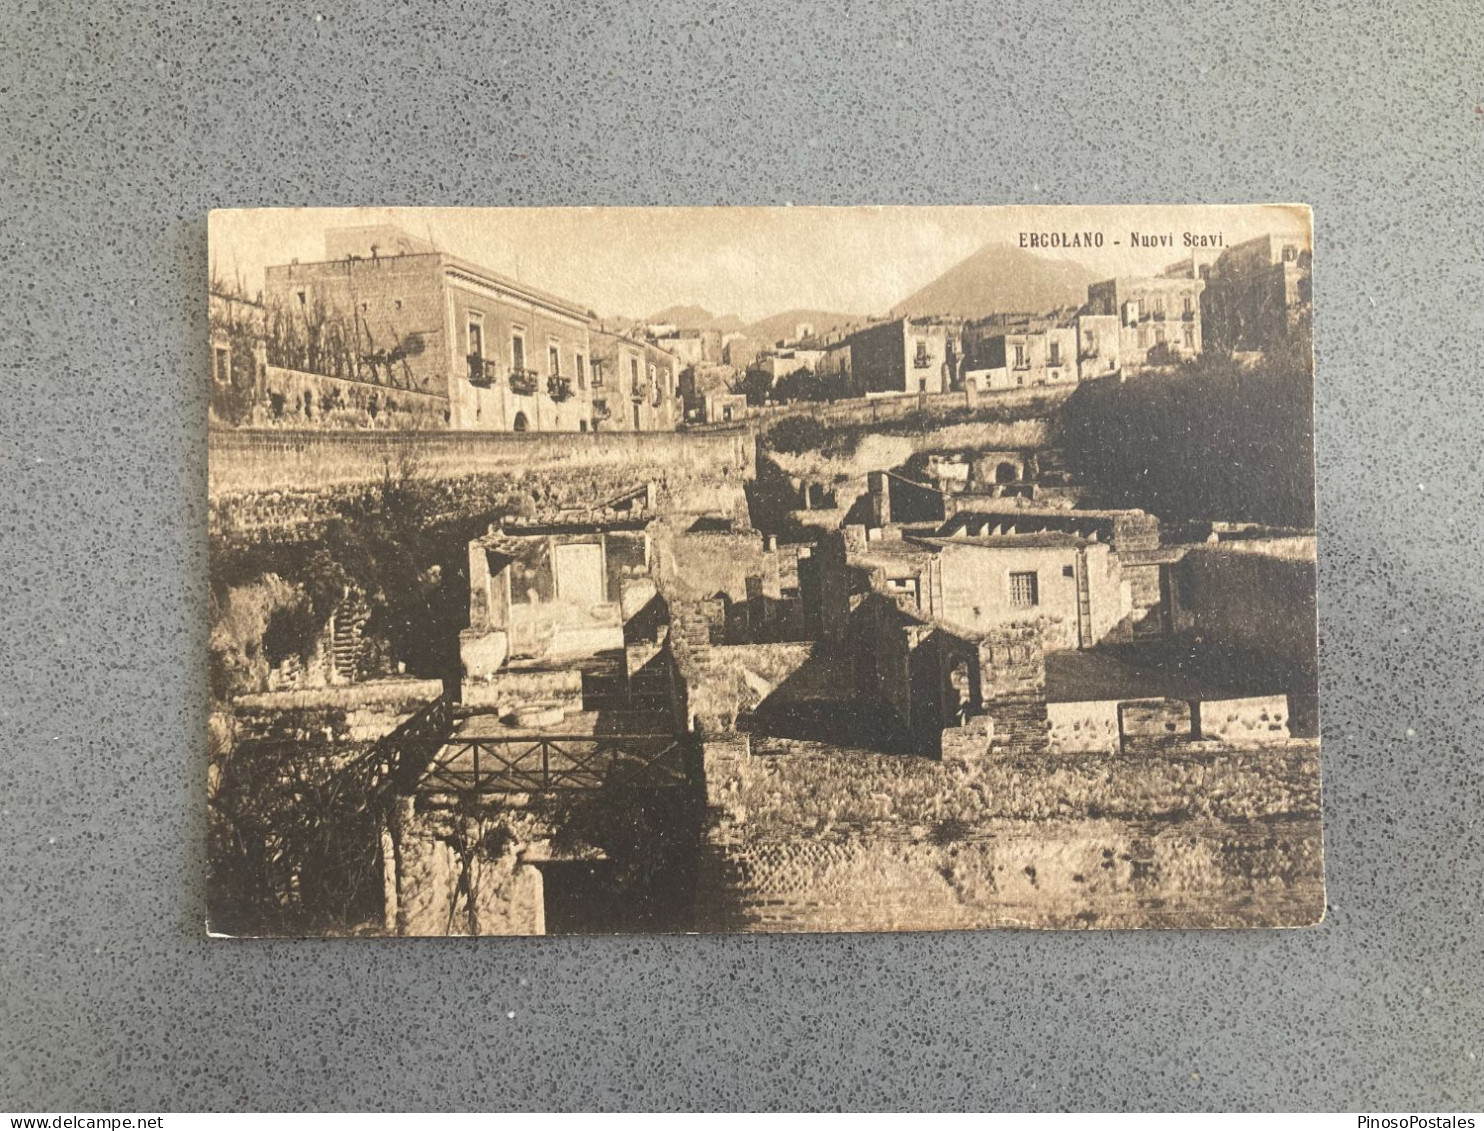 Ercolano - Nuovi Scavi Carte Postale Postcard - Ercolano